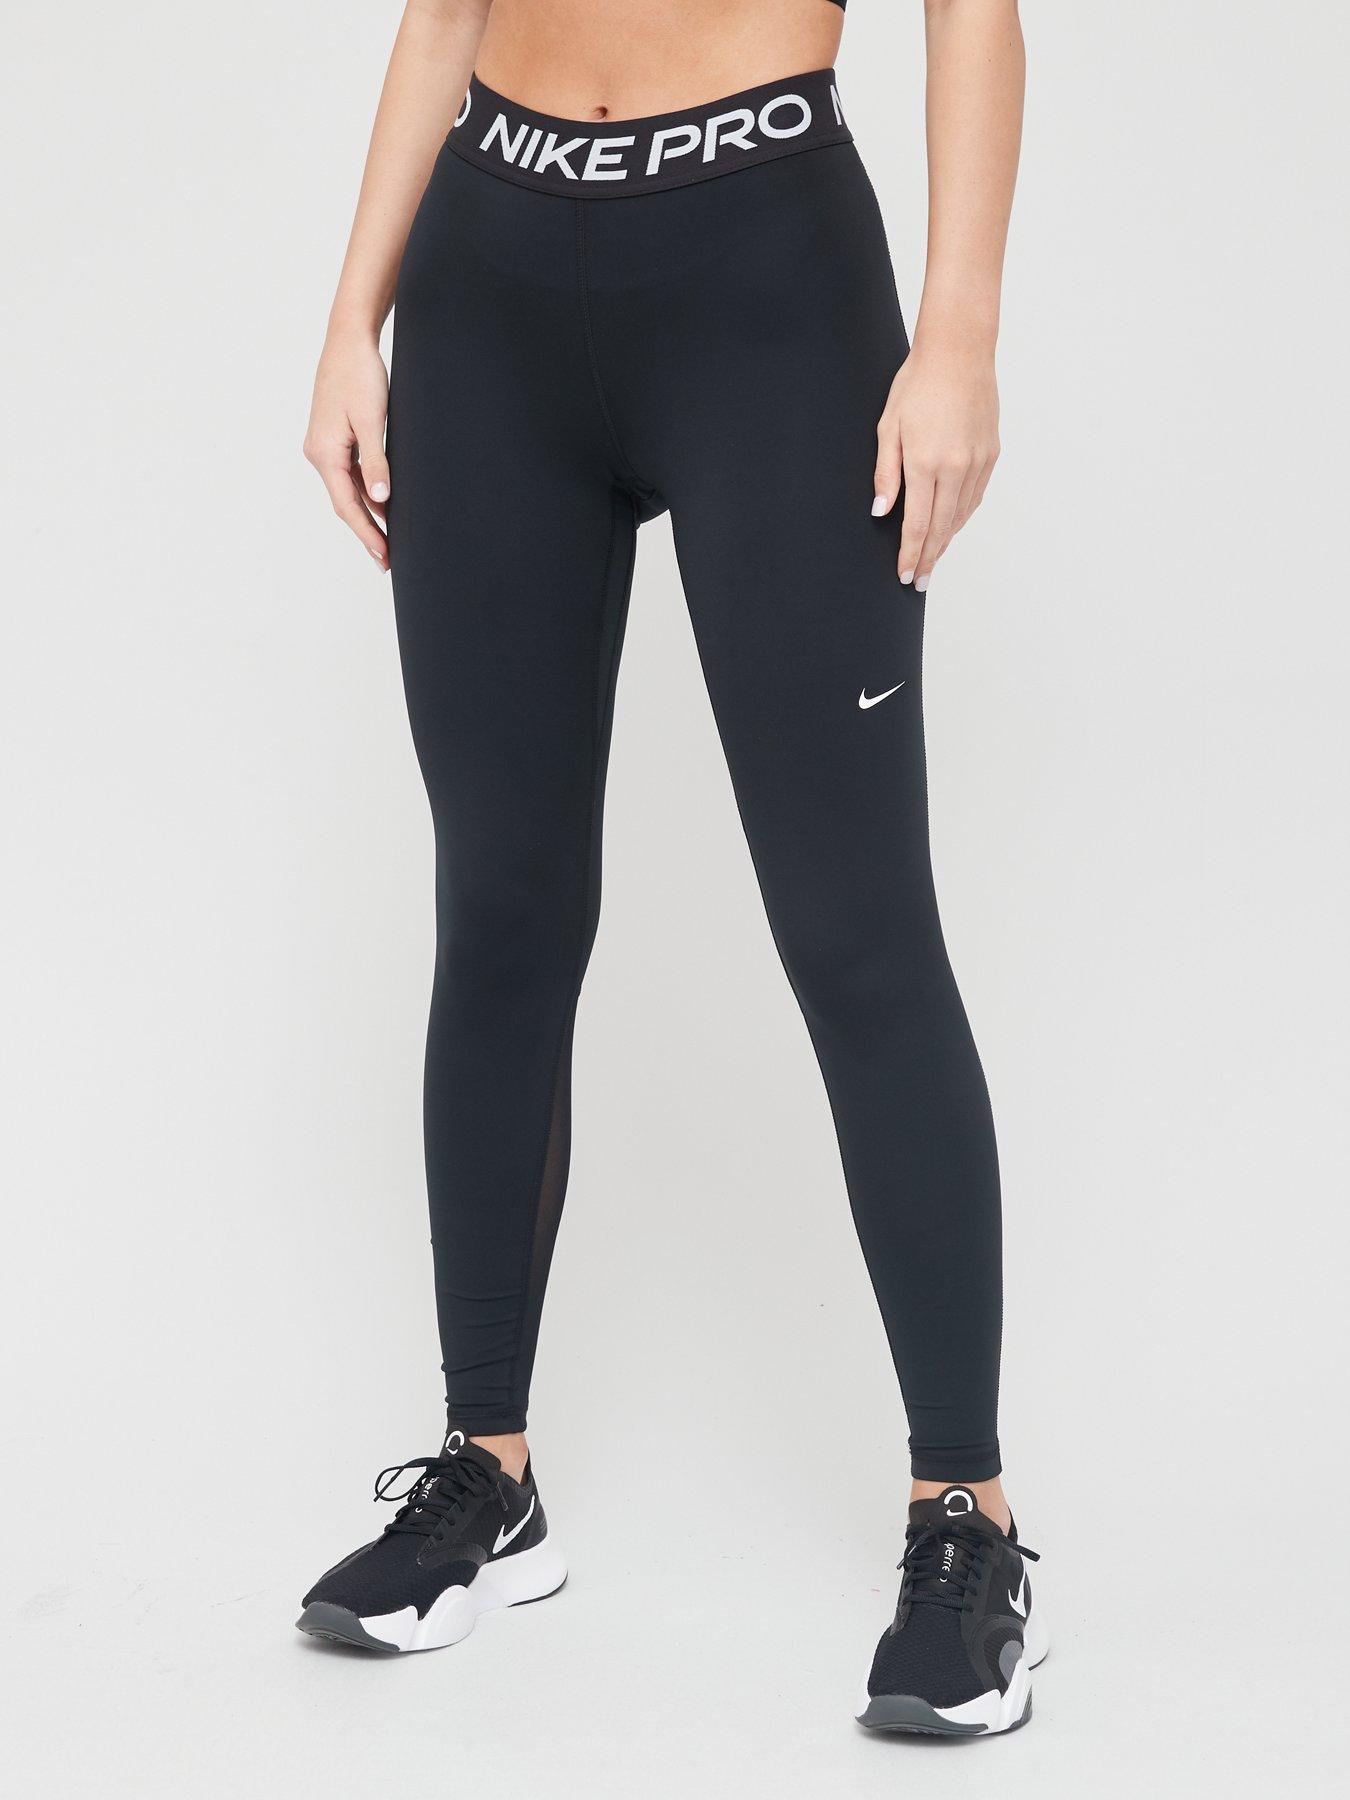 Nike Dry Therma Girls Gray & Pink Dri-fit Athletic Leggings Sweat